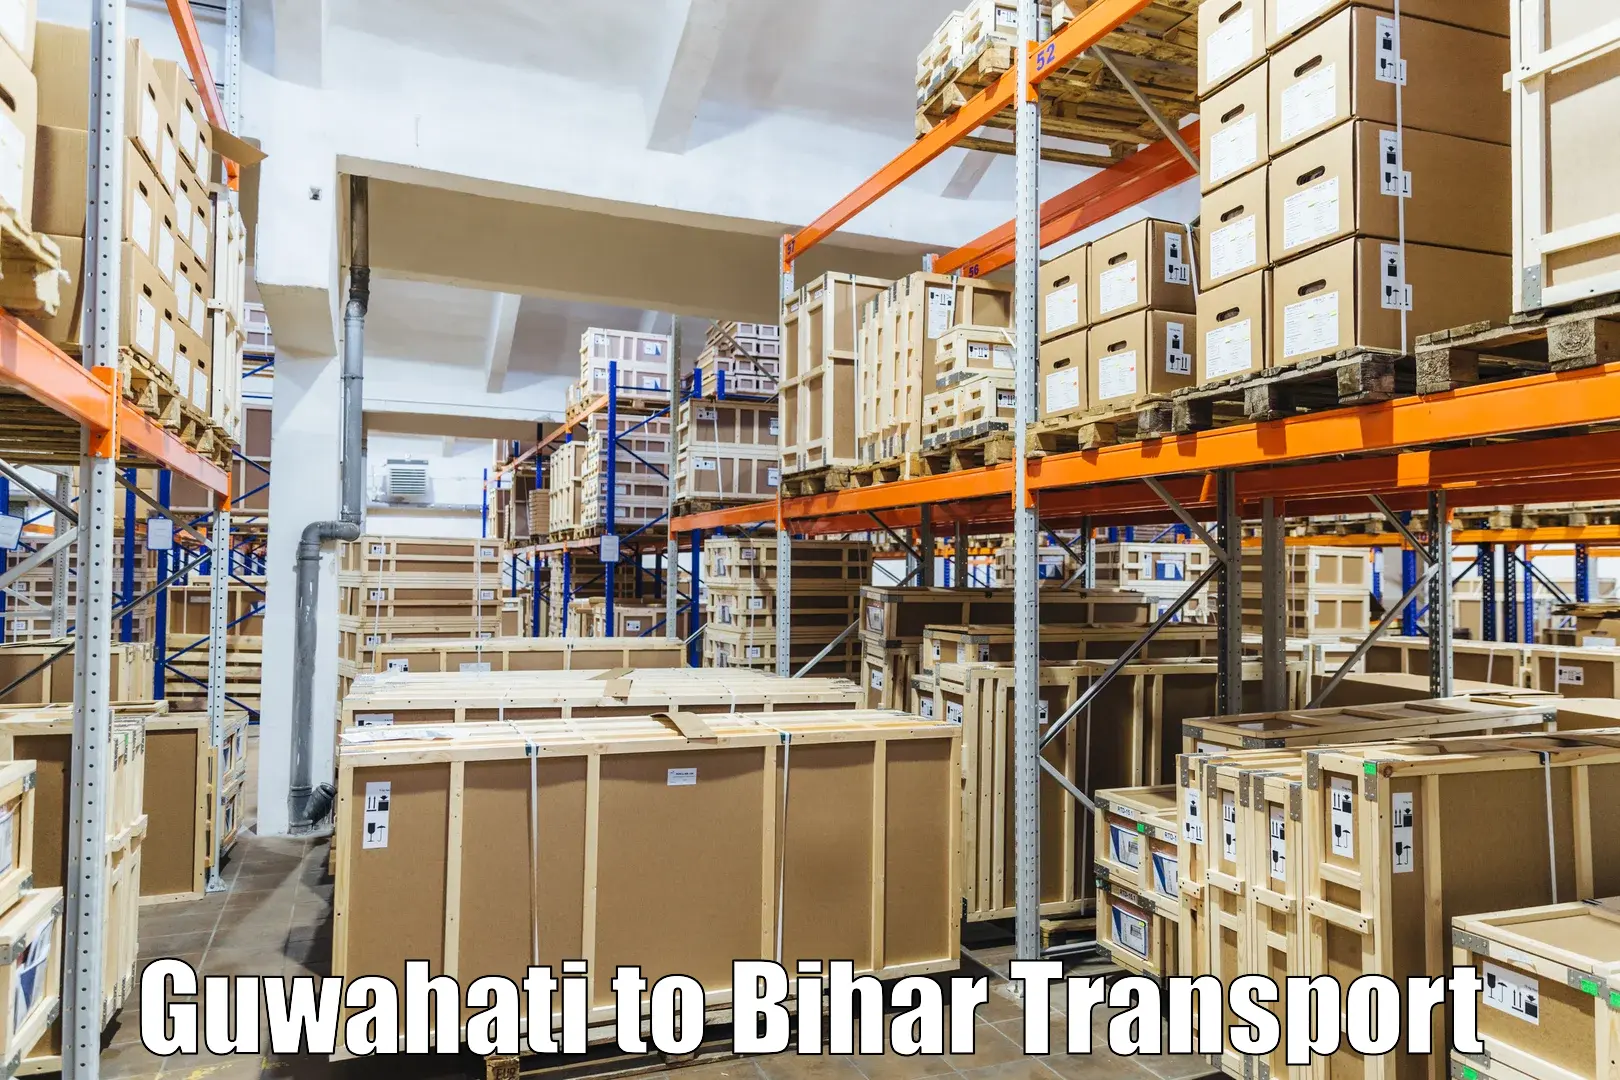 Nearest transport service Guwahati to IIIT Bhagalpur